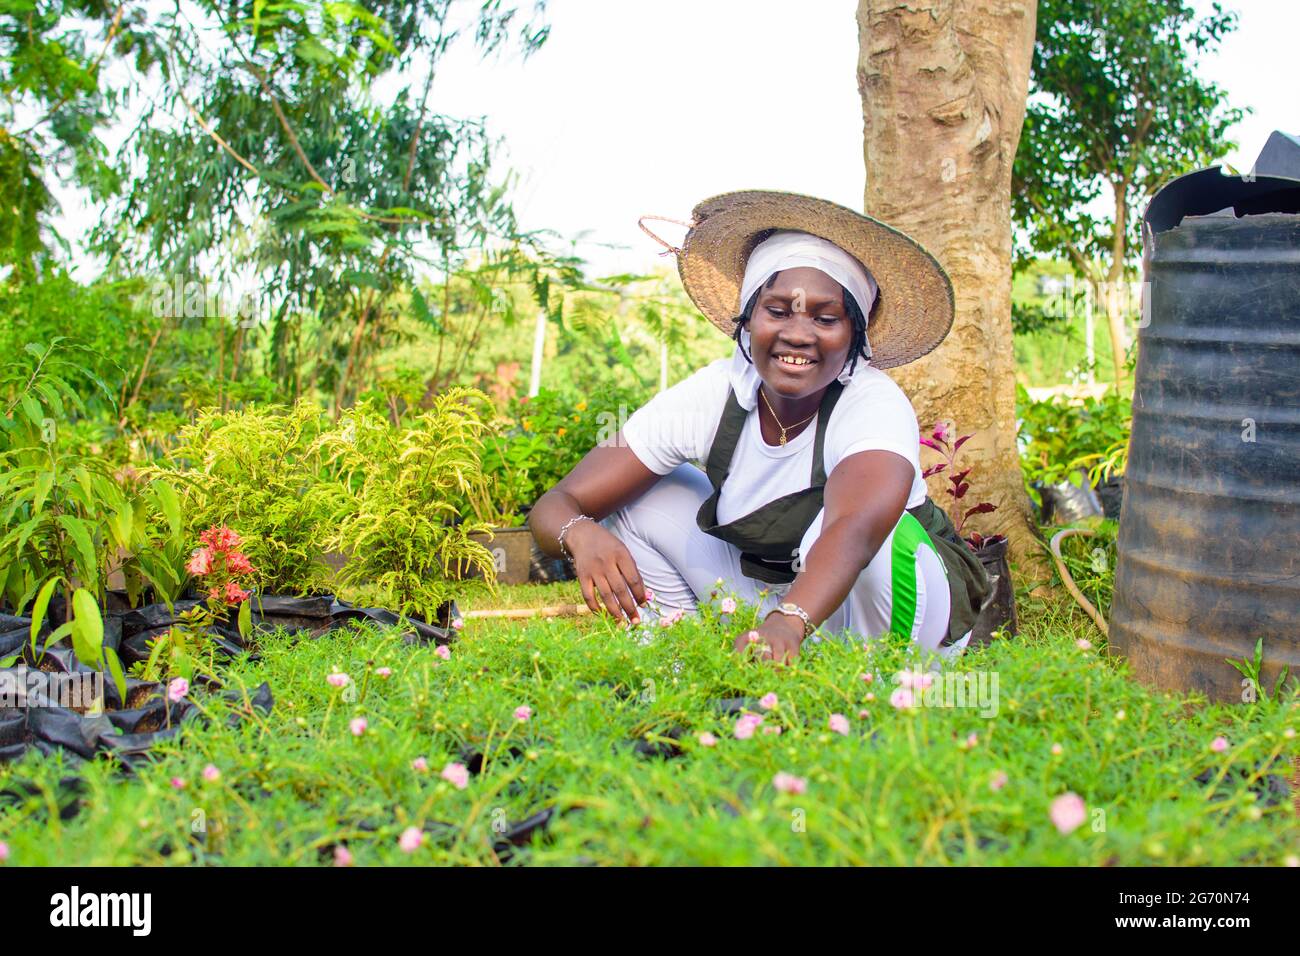 Jardinera africana, florería o horticultor usando un delantal y un sombrero, trabajando mientras que se pone en cuclillas en un jardín verde y colorido de flores y plantas Foto de stock